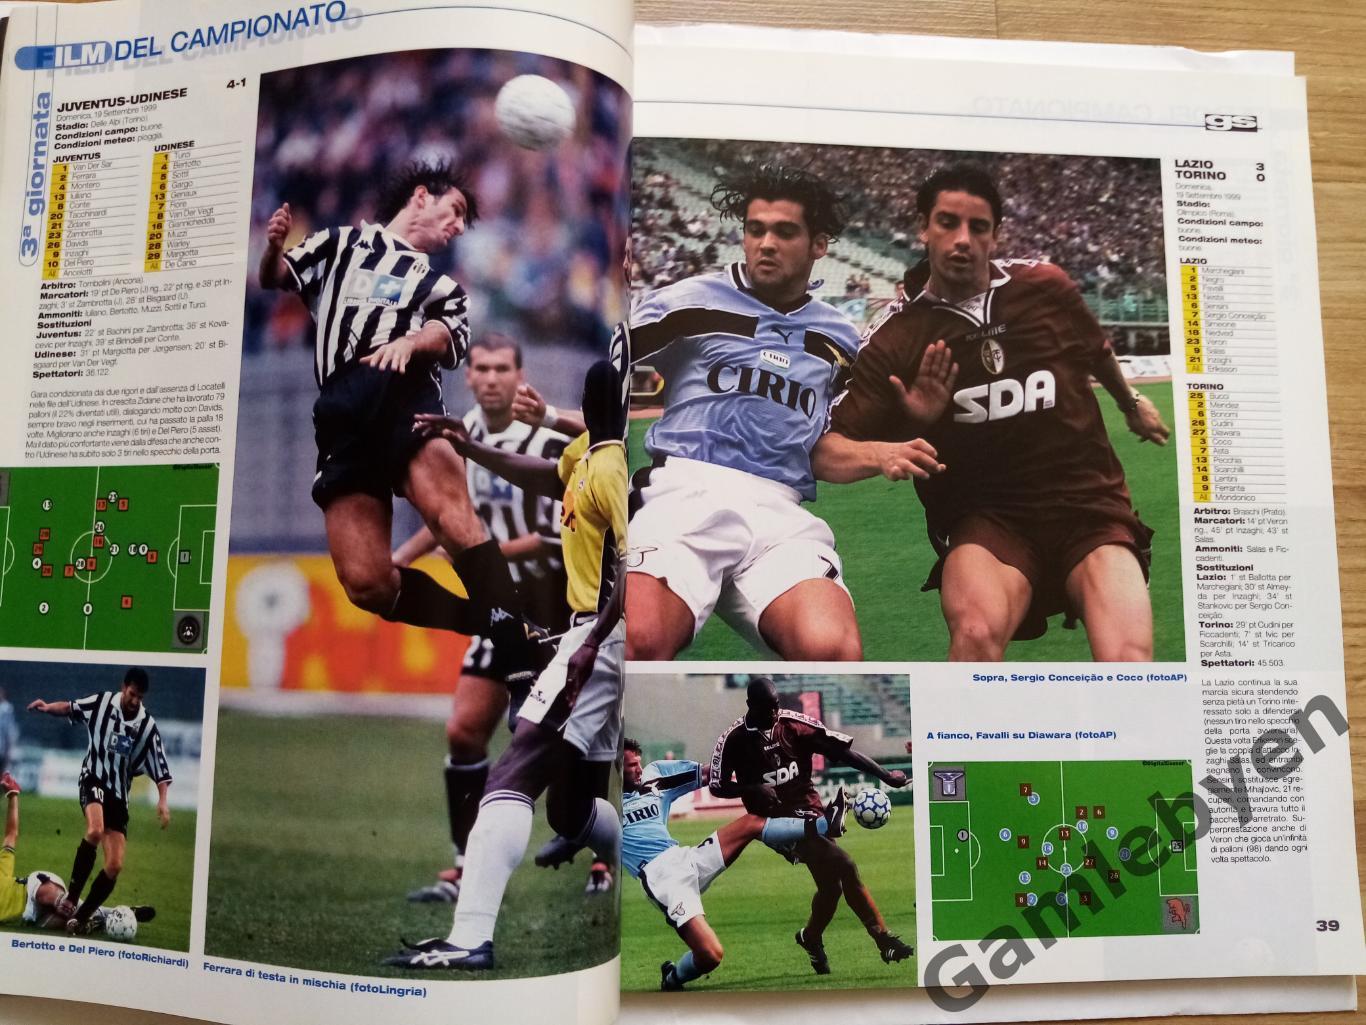 Спецвыпуск Guerin sportivo, сезон 1999/2000 в Серии А 3